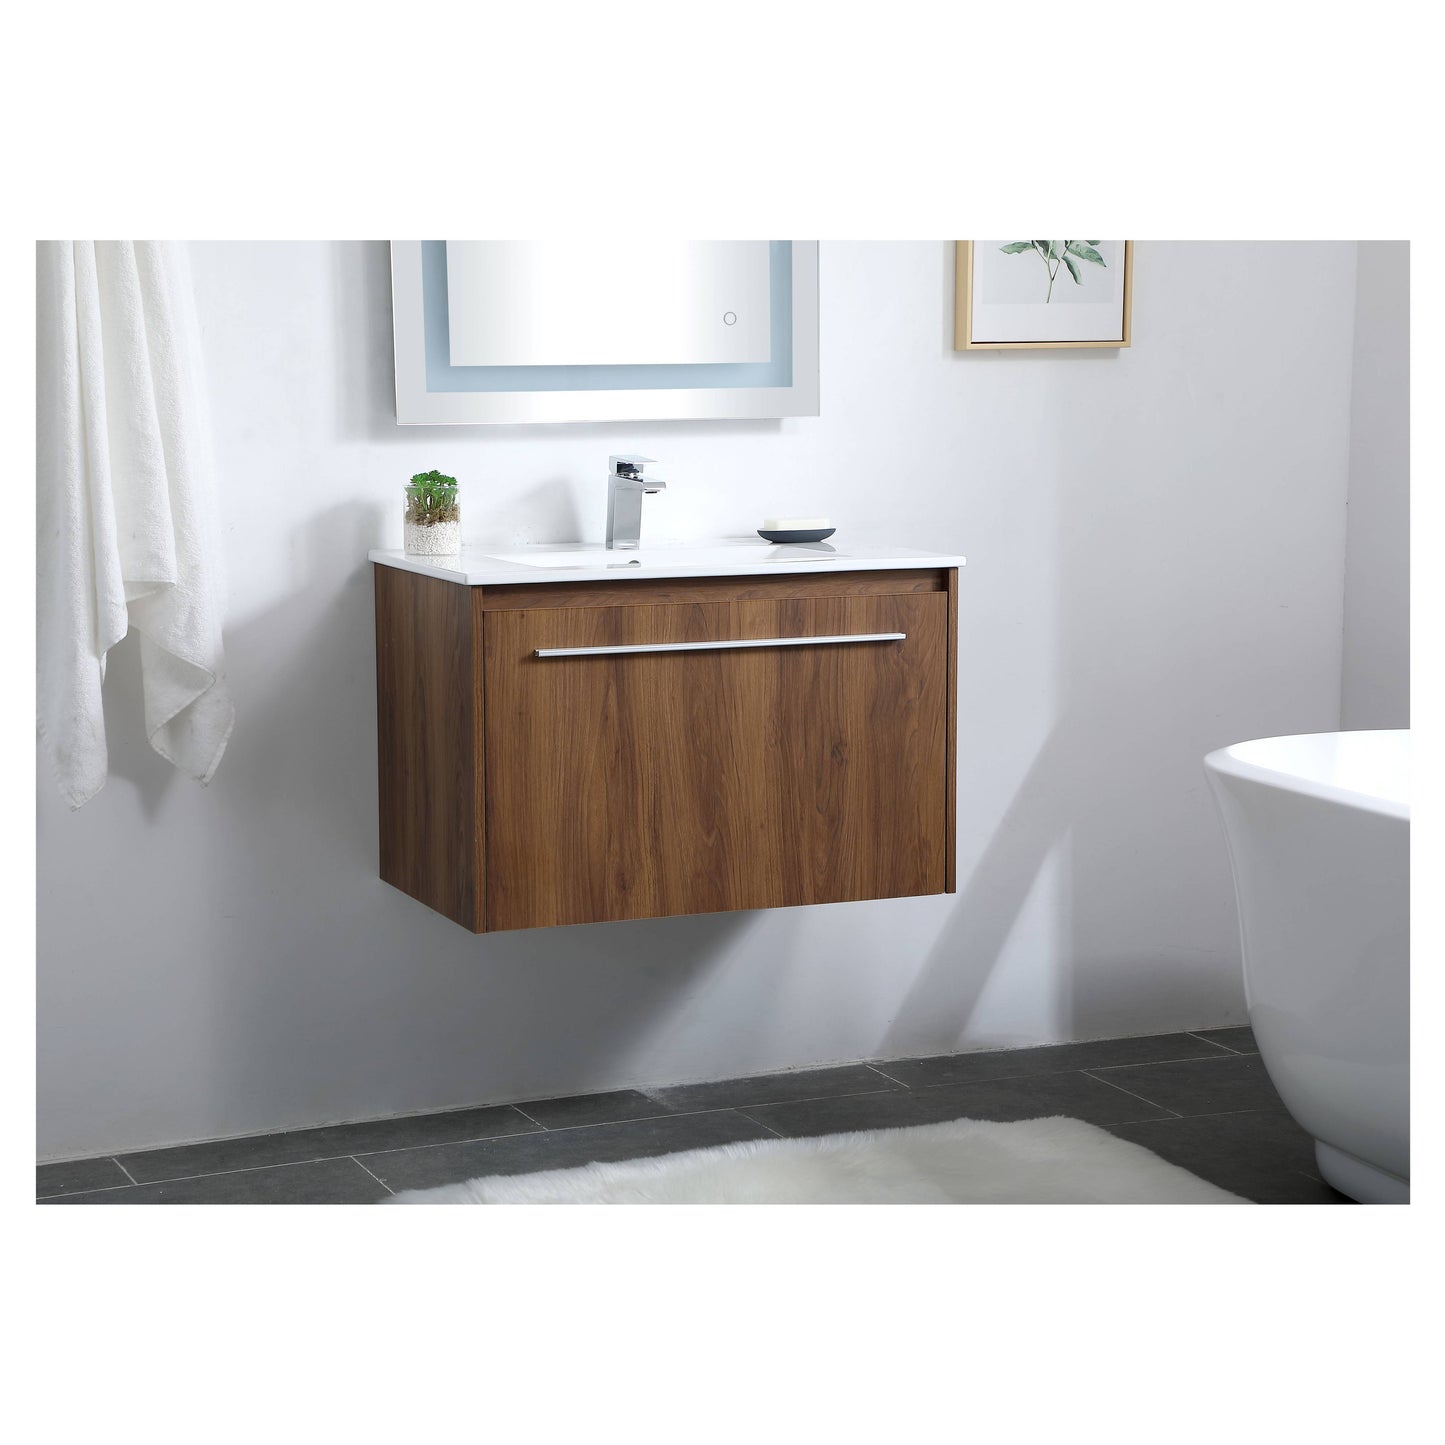 VF45030WB 30" Single Bathroom Floating Vanity in Walnut Brown